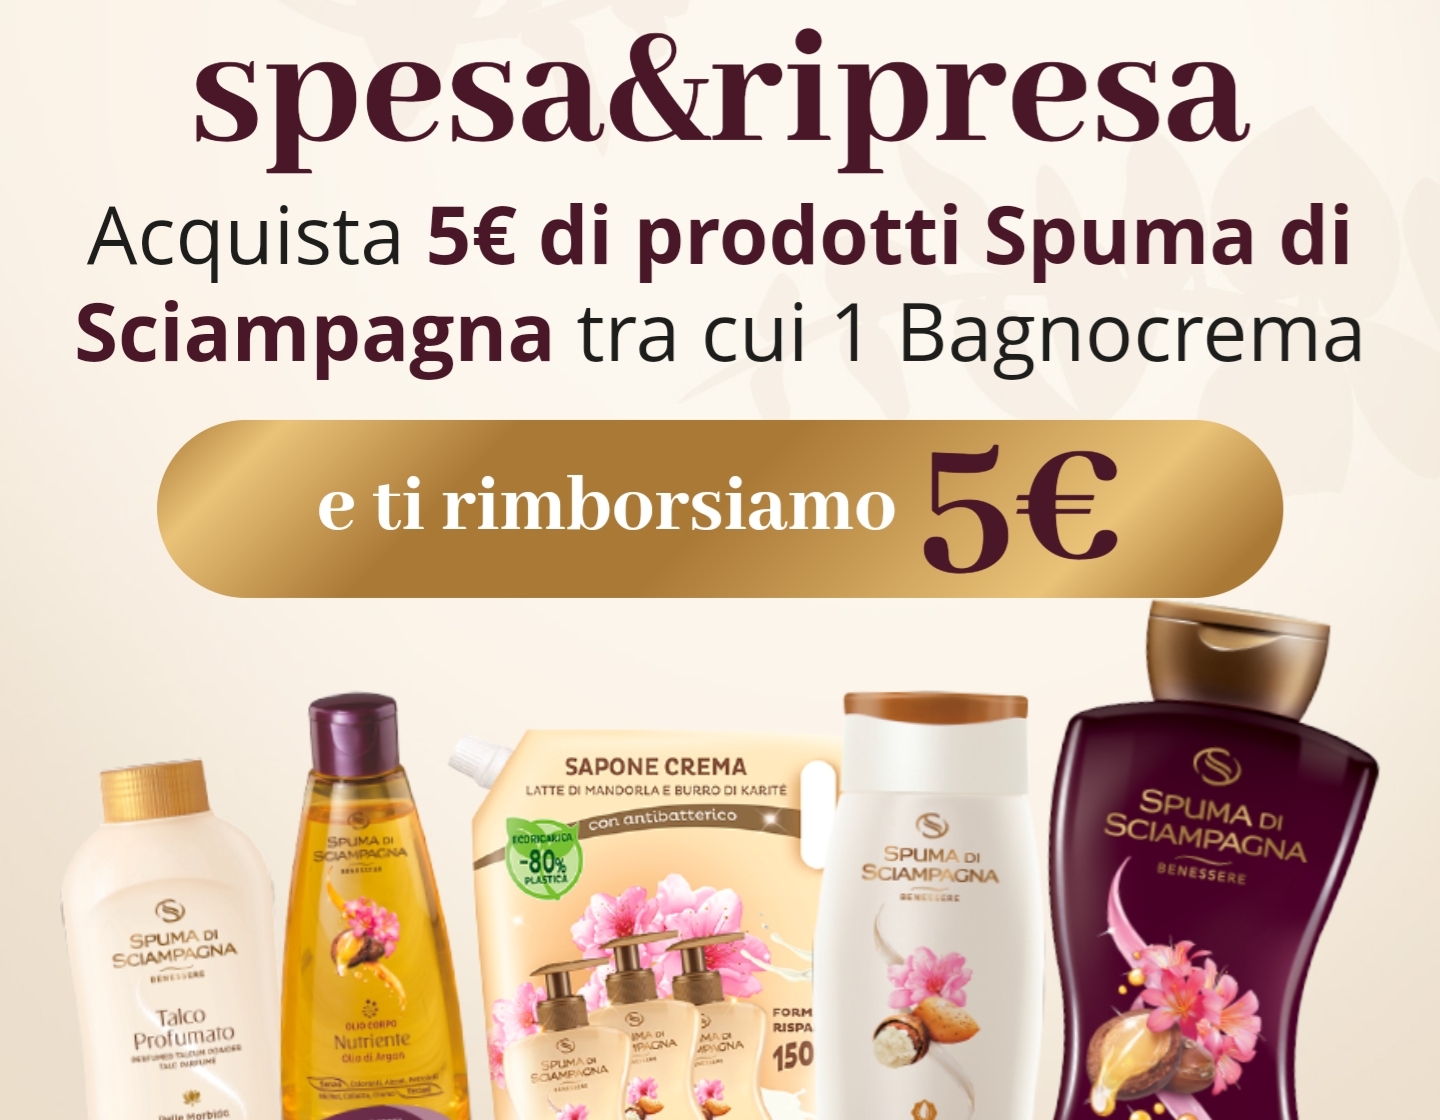 "spesa&ripresa" Acquista 5€ di prodotti Spuma di Sciampagna